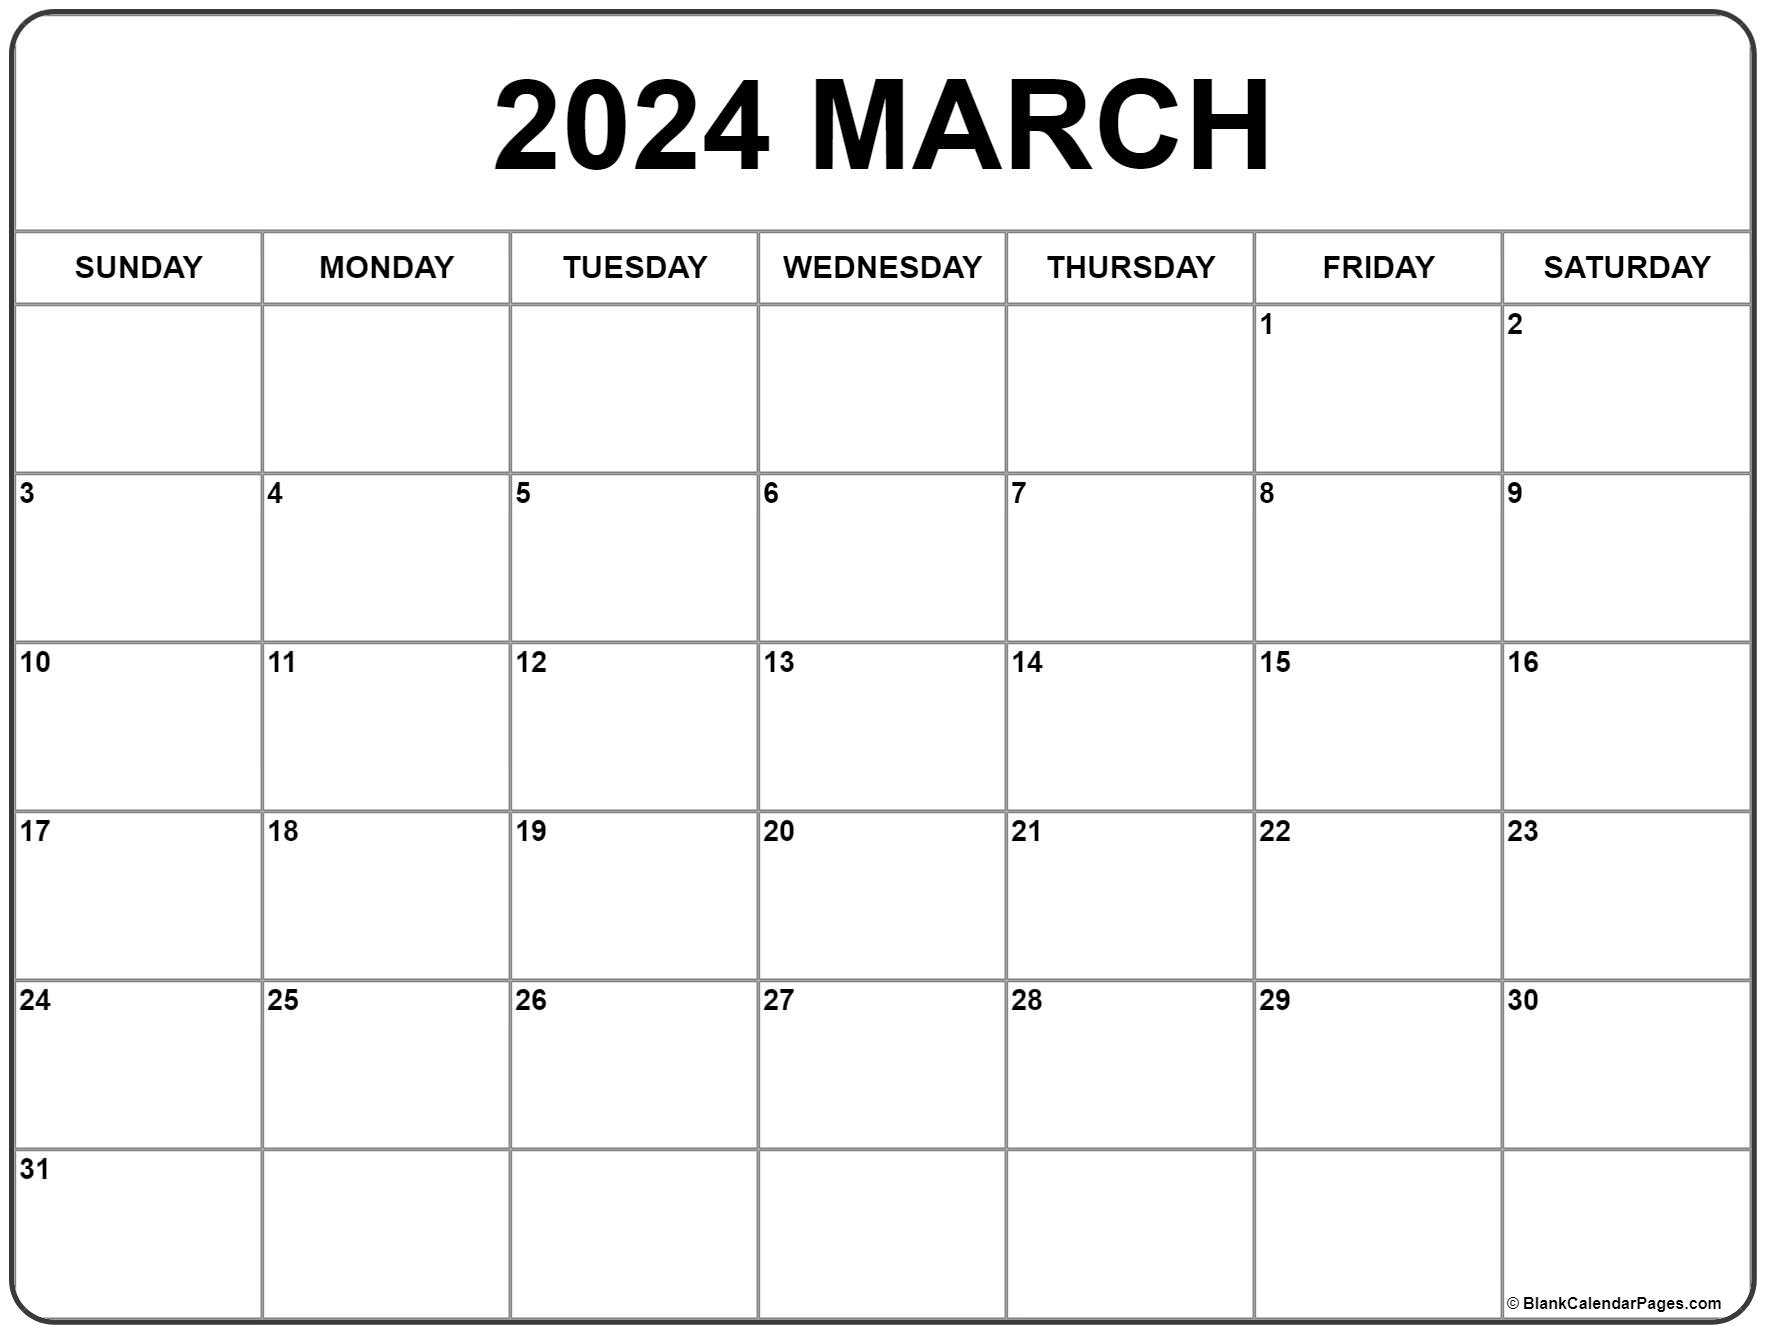 March 2024 Calendar | Free Printable Calendar | Printable Calendar 2024 March